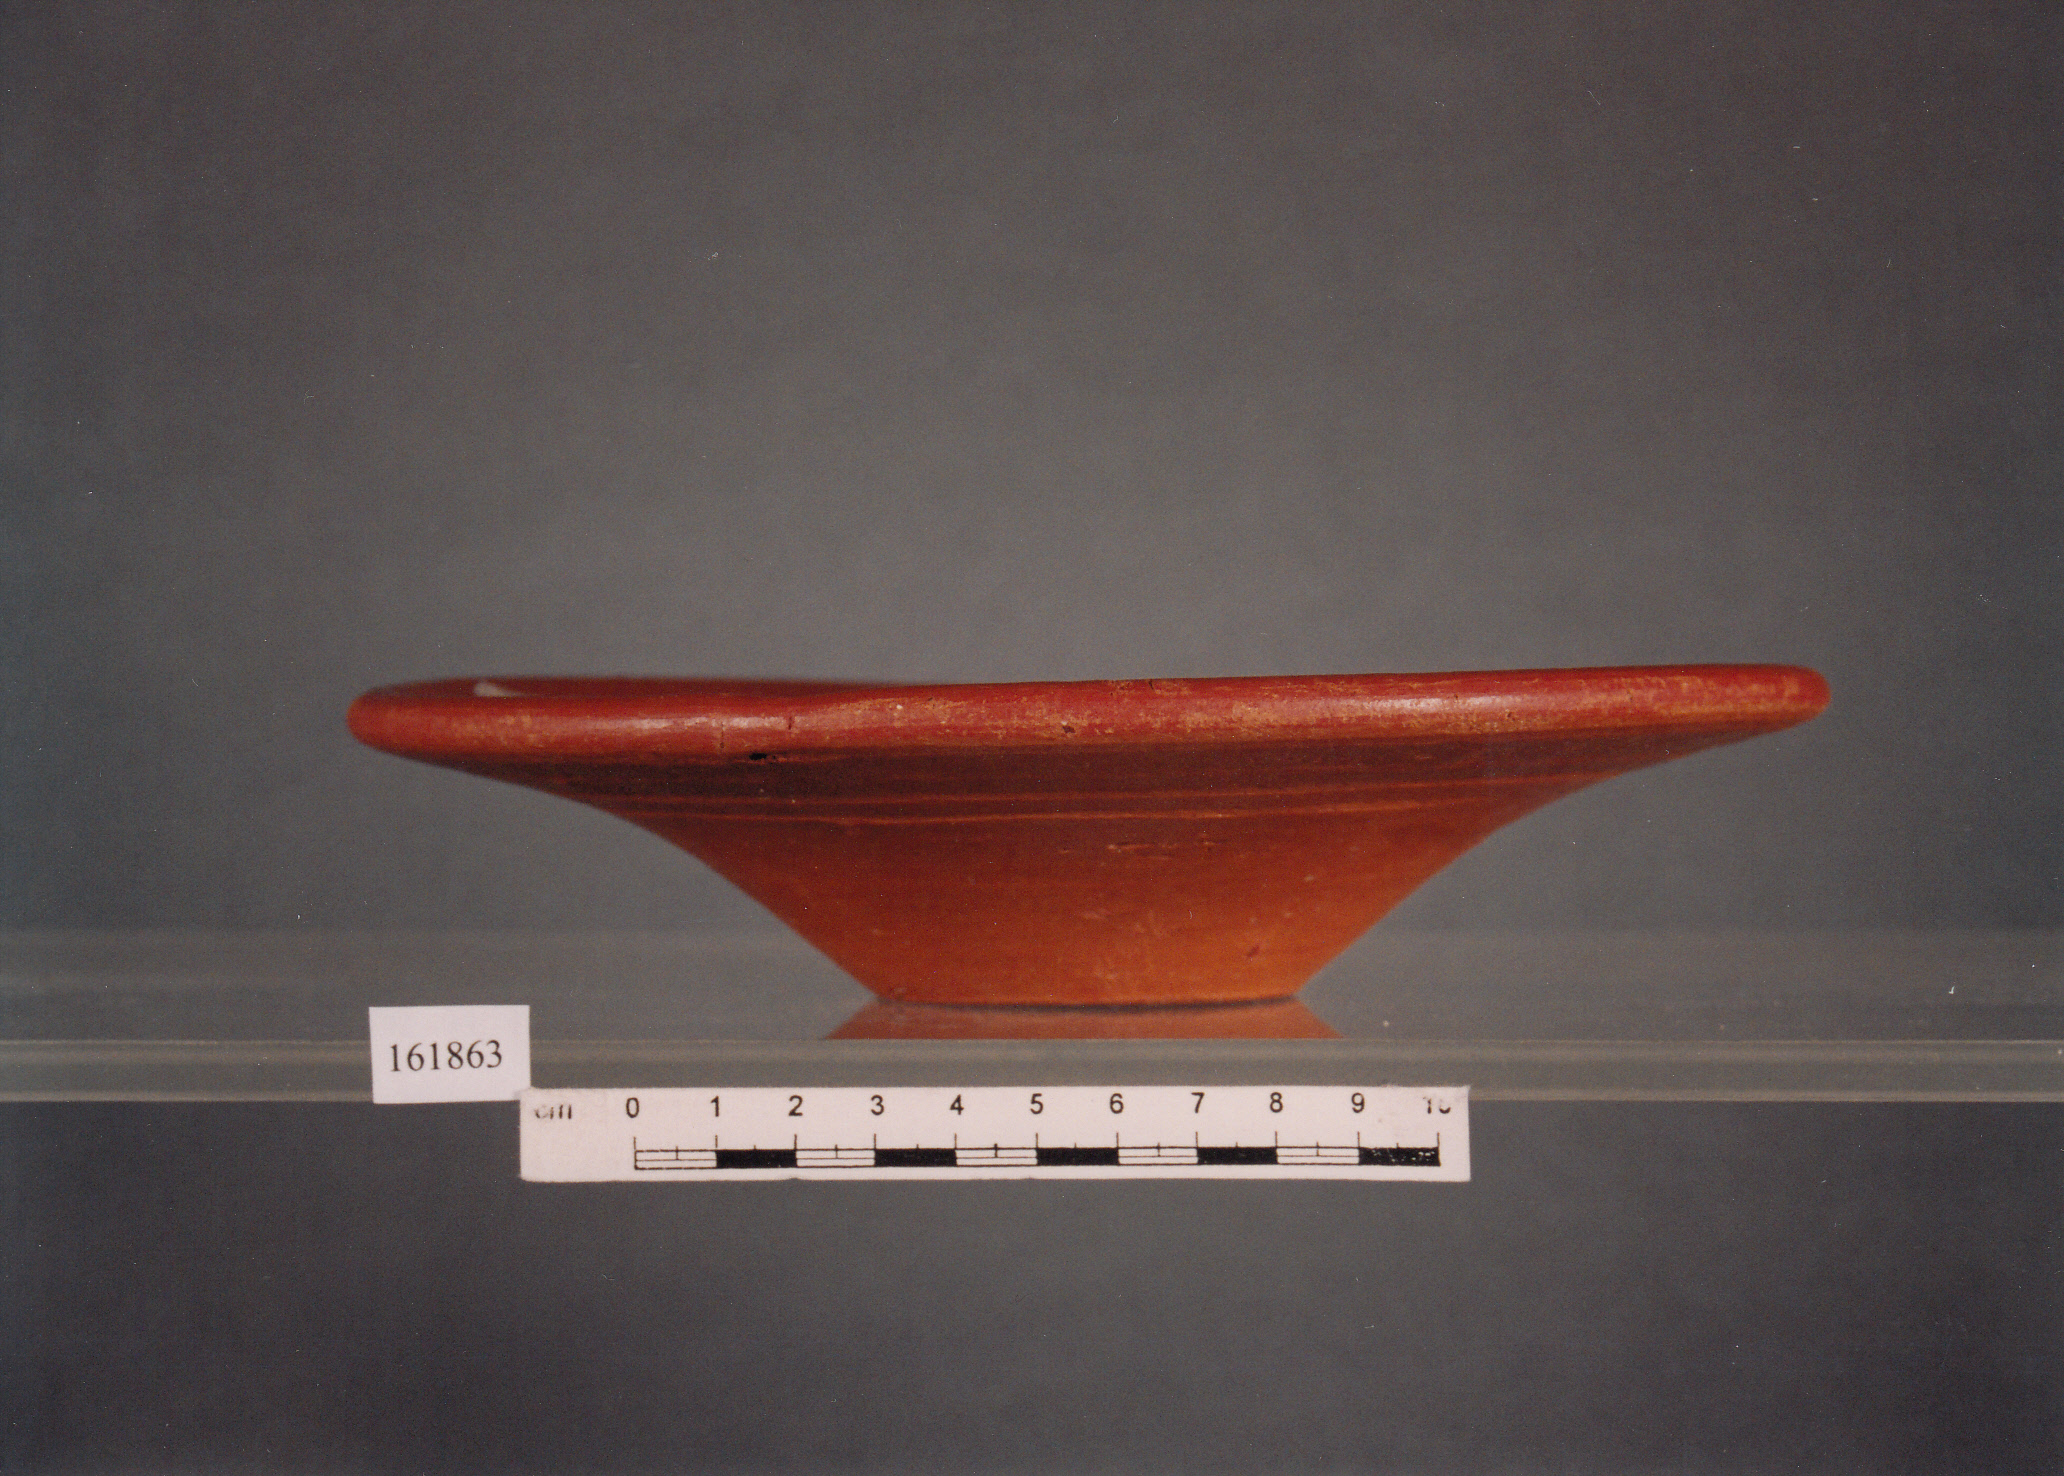 piatto, piatto ombelicato - civiltà fenicia (VII sec. a.C)